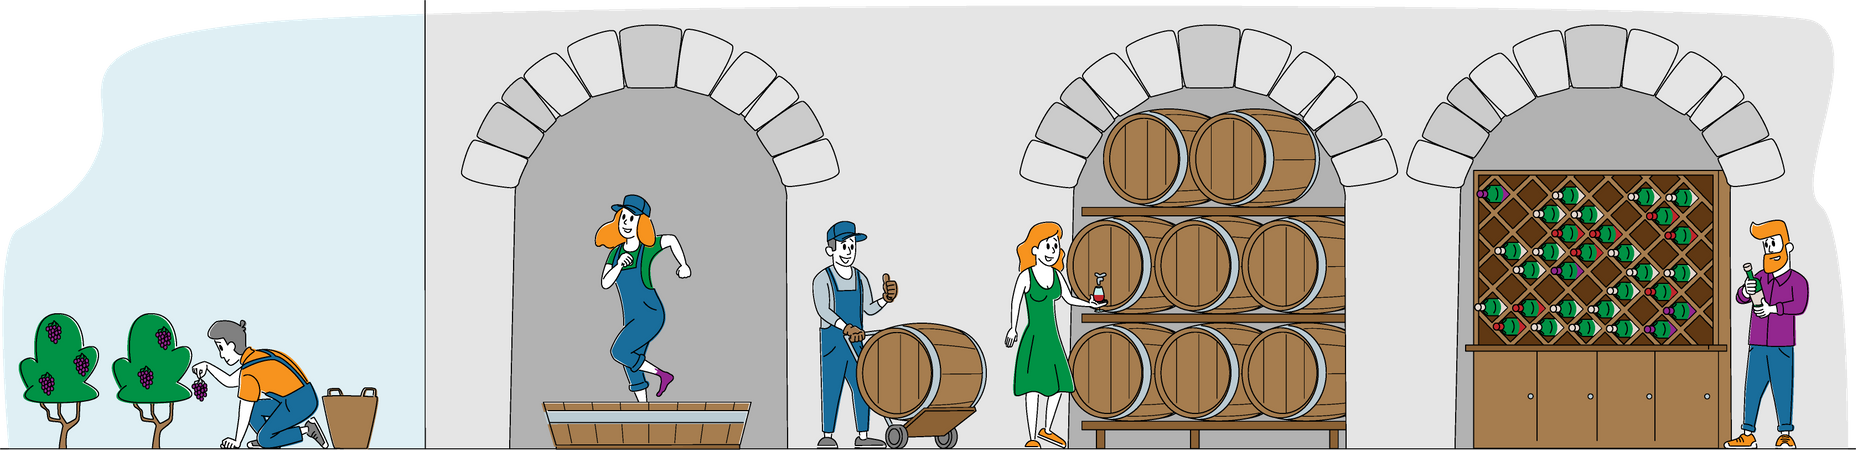 Producción de vino y consumo de vino.  Ilustración